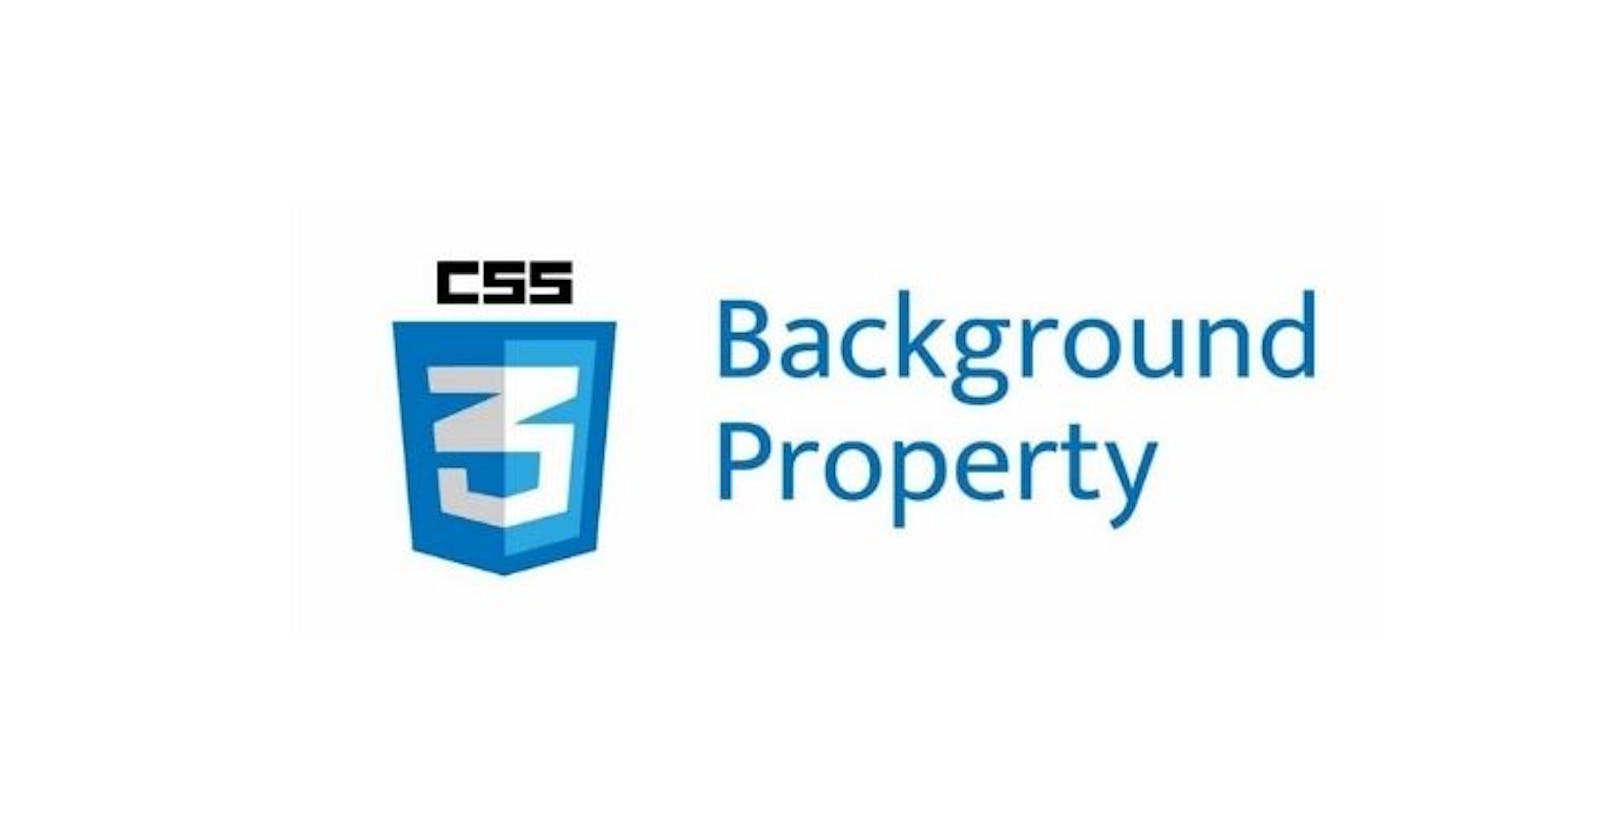 Describe CSS Background Properties